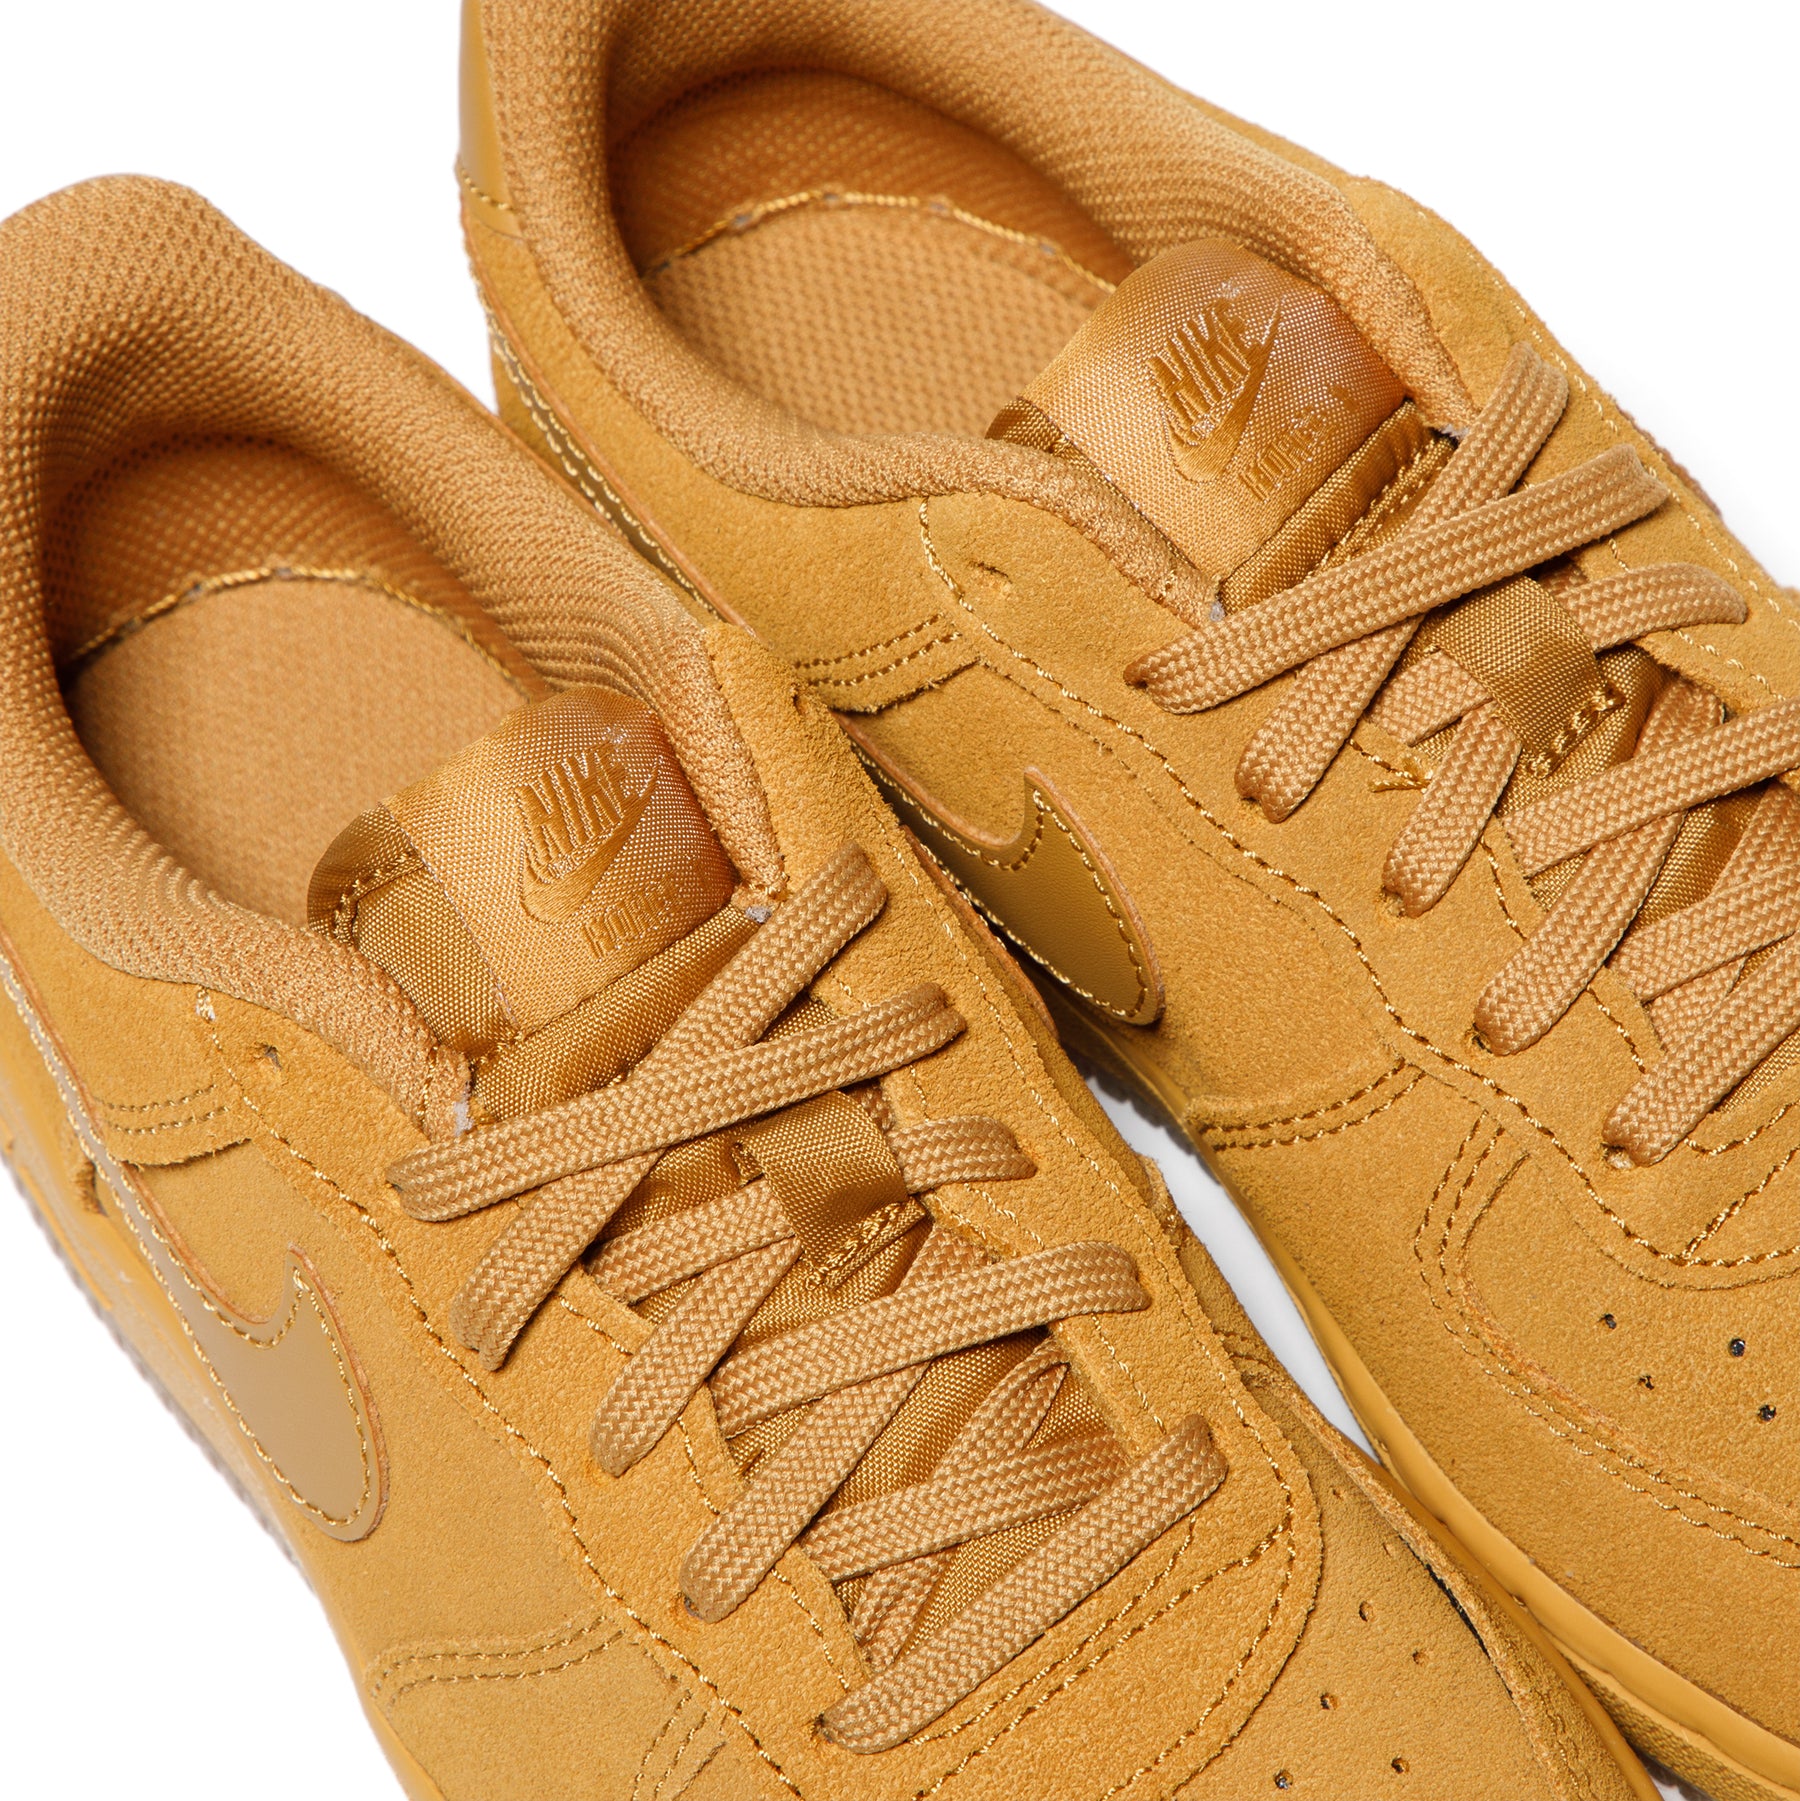 Nike Force 1 LV8 3 (PS) Shoes Boy’s Kids SZ 12C Wheat Brown BQ5486-700